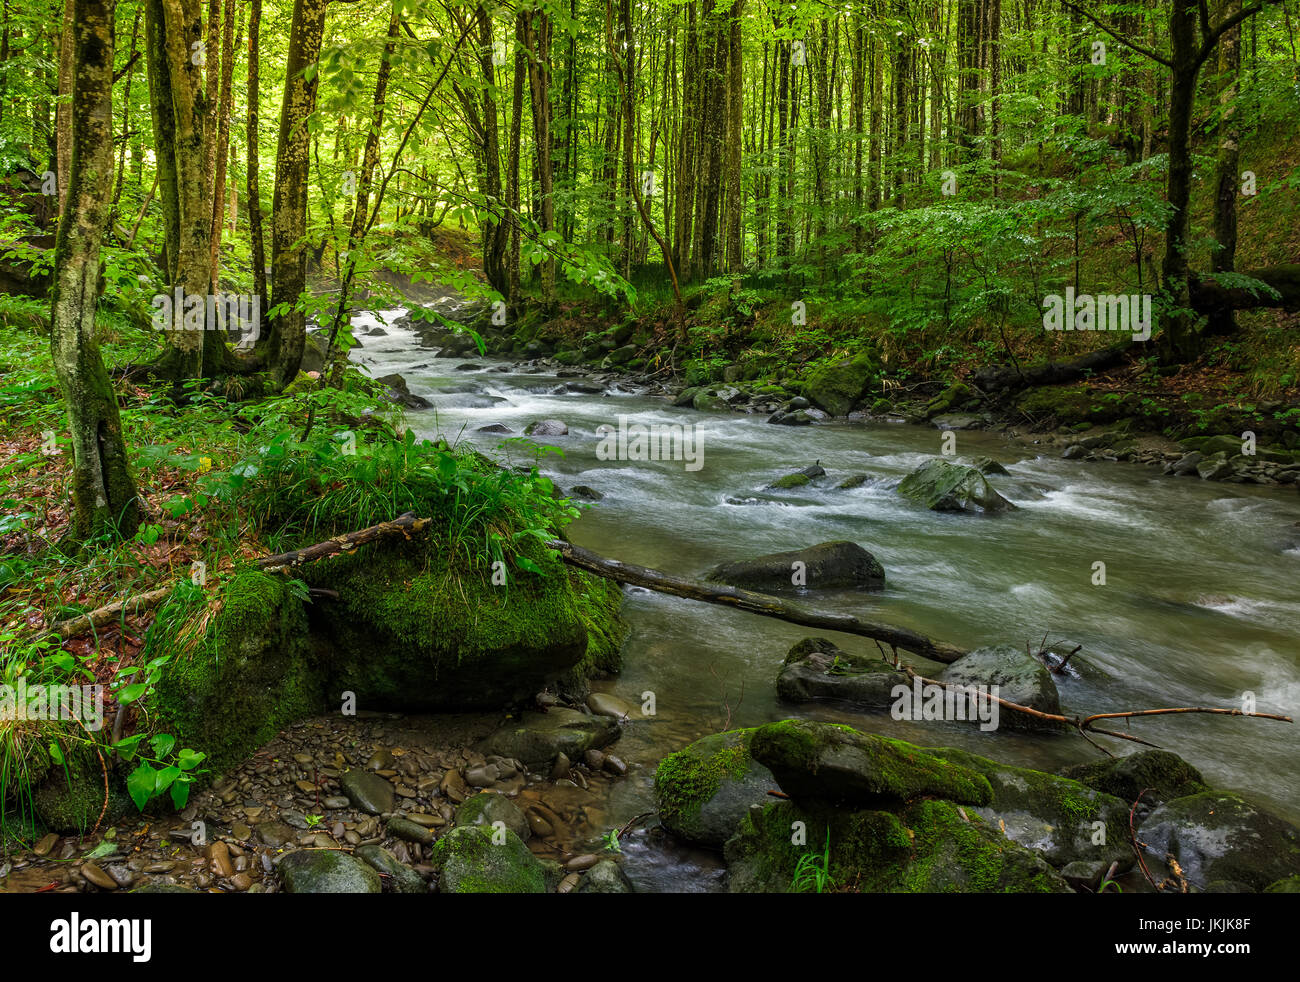 Schnelle Strömung durch grünen Urwald. Steinen mit Moos bedeckt lag am Ufer. schöne Natur-Ansicht in der Sommerzeit. Stockfoto